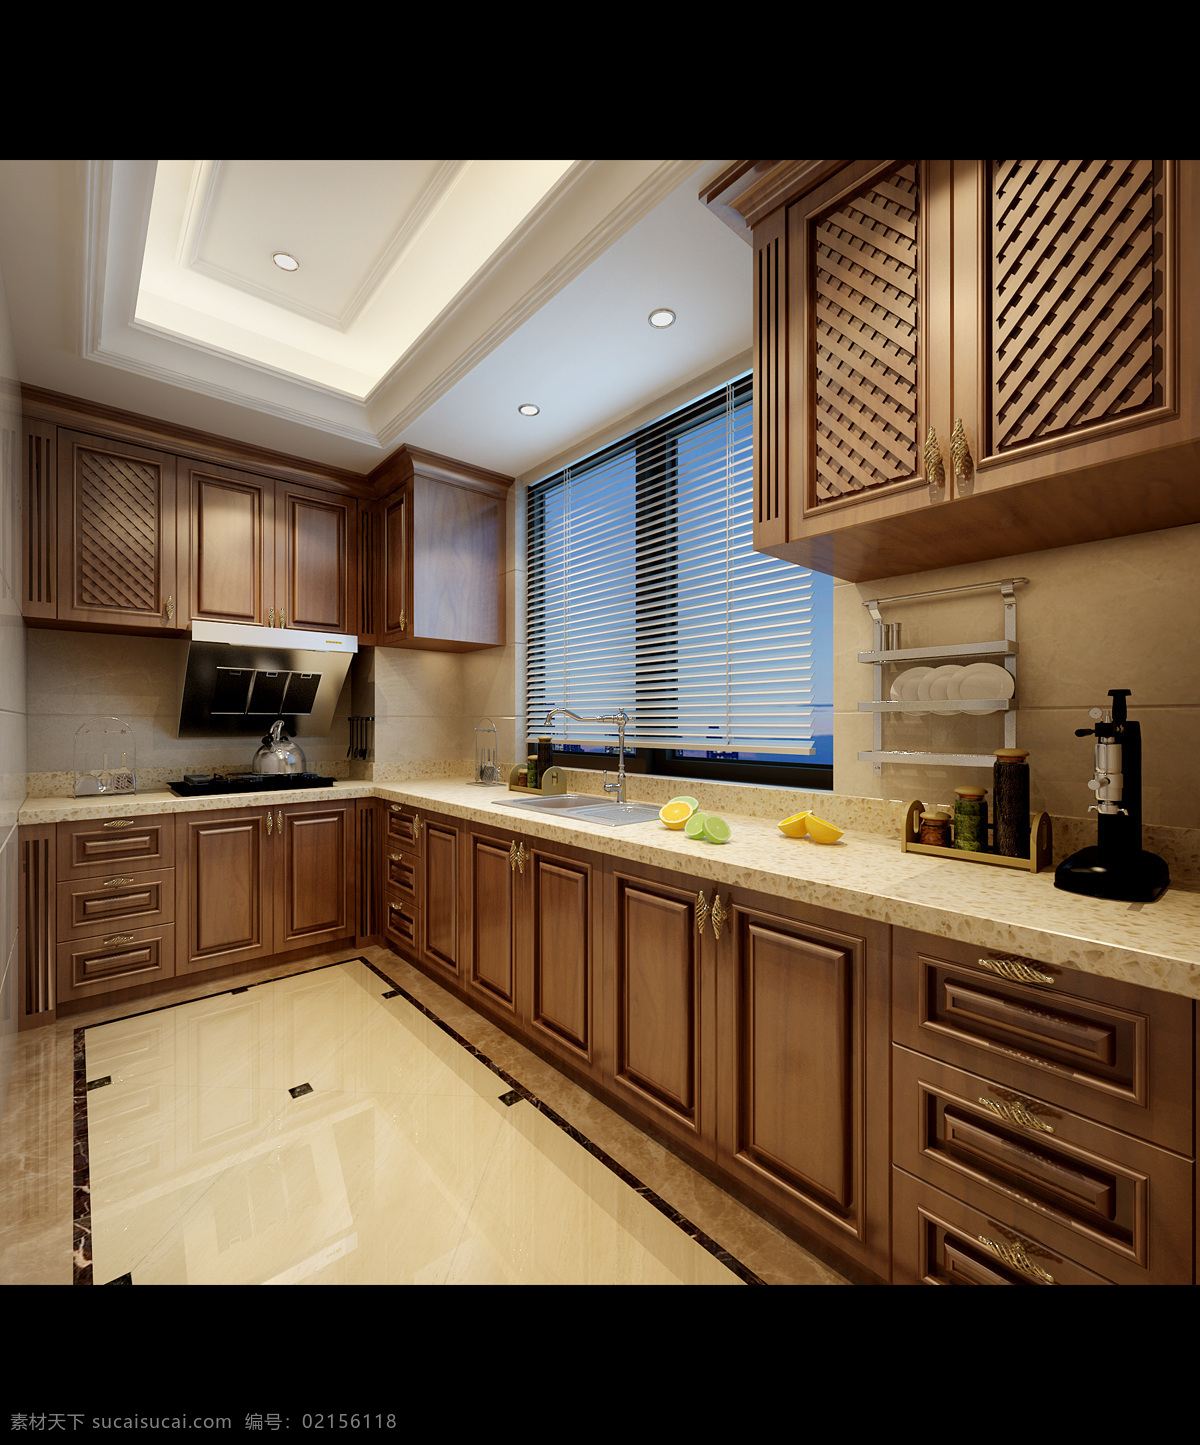 欧式厨房 厨房吊顶 地面拼花 简欧厨房 油木厨房 环境设计 室内设计